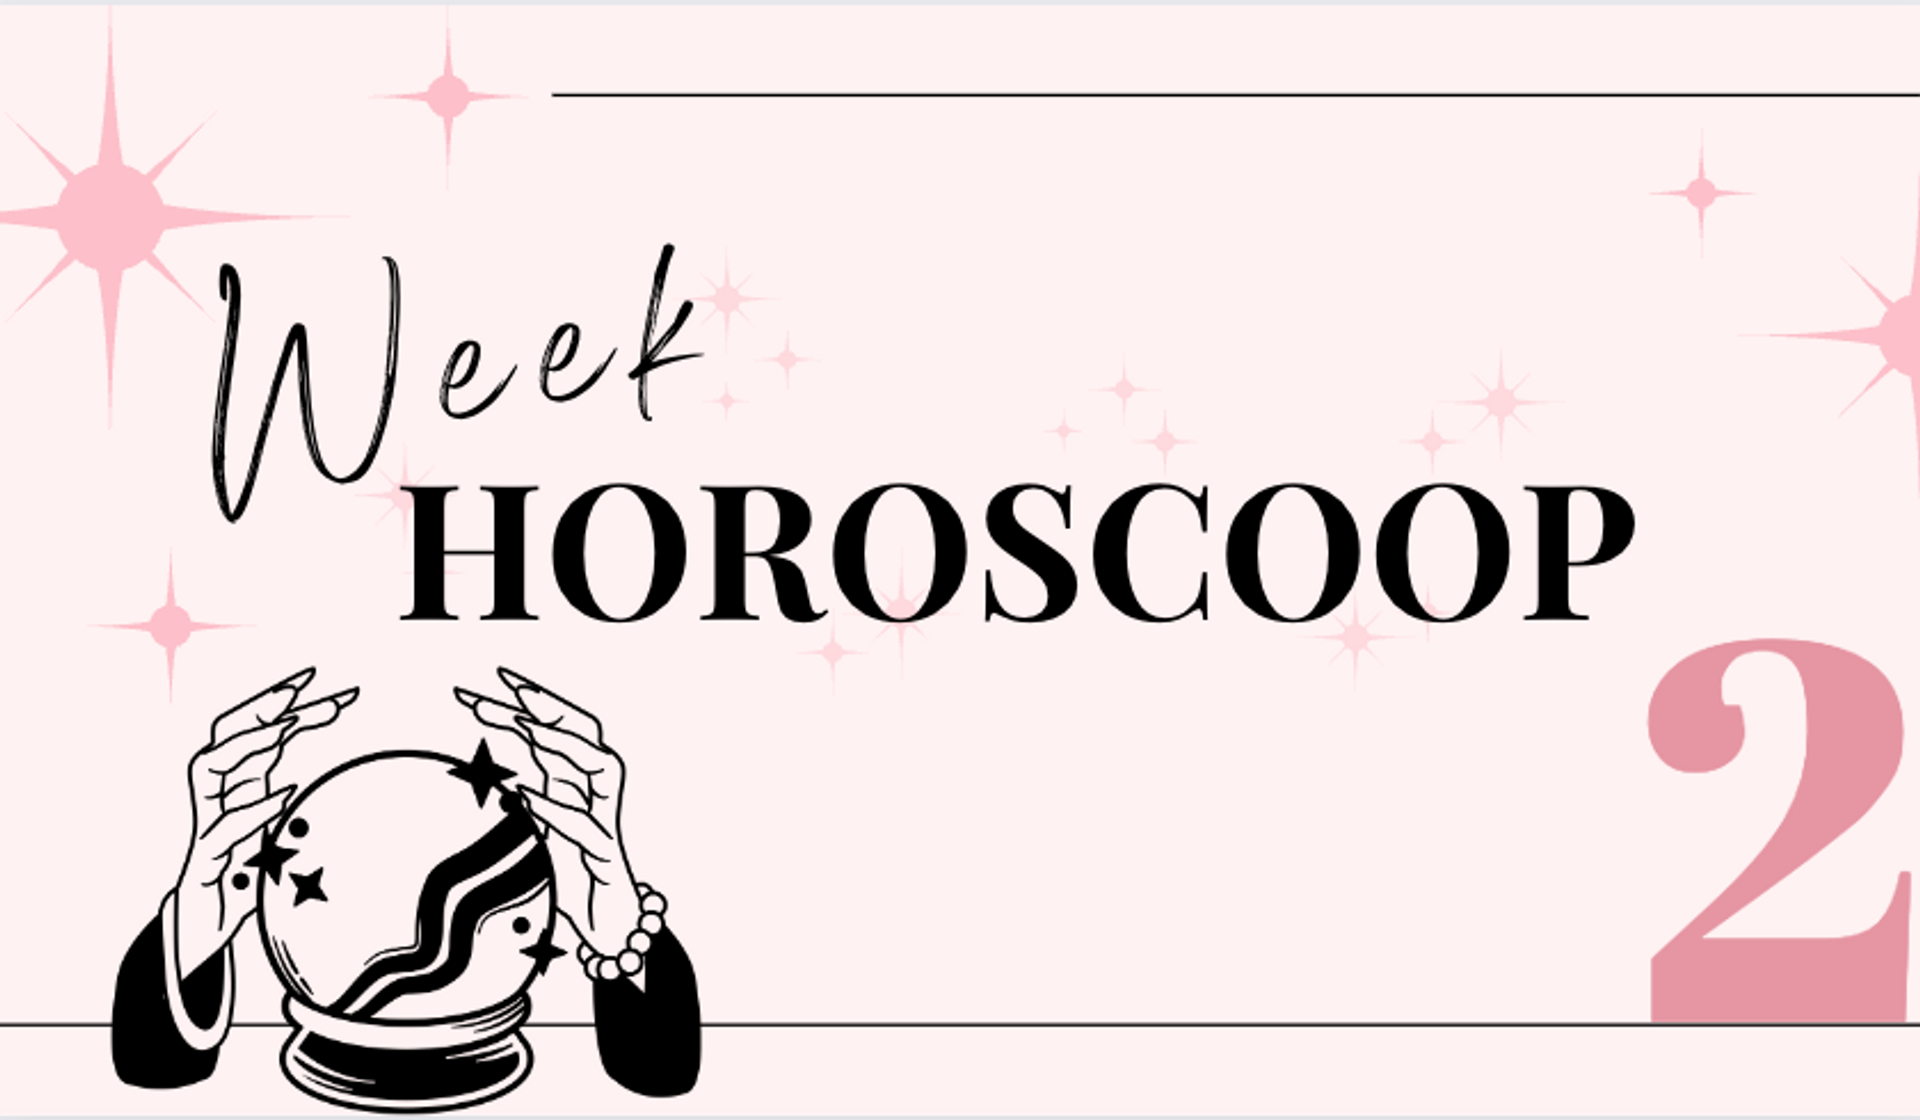 weekhoroscoop-week-2